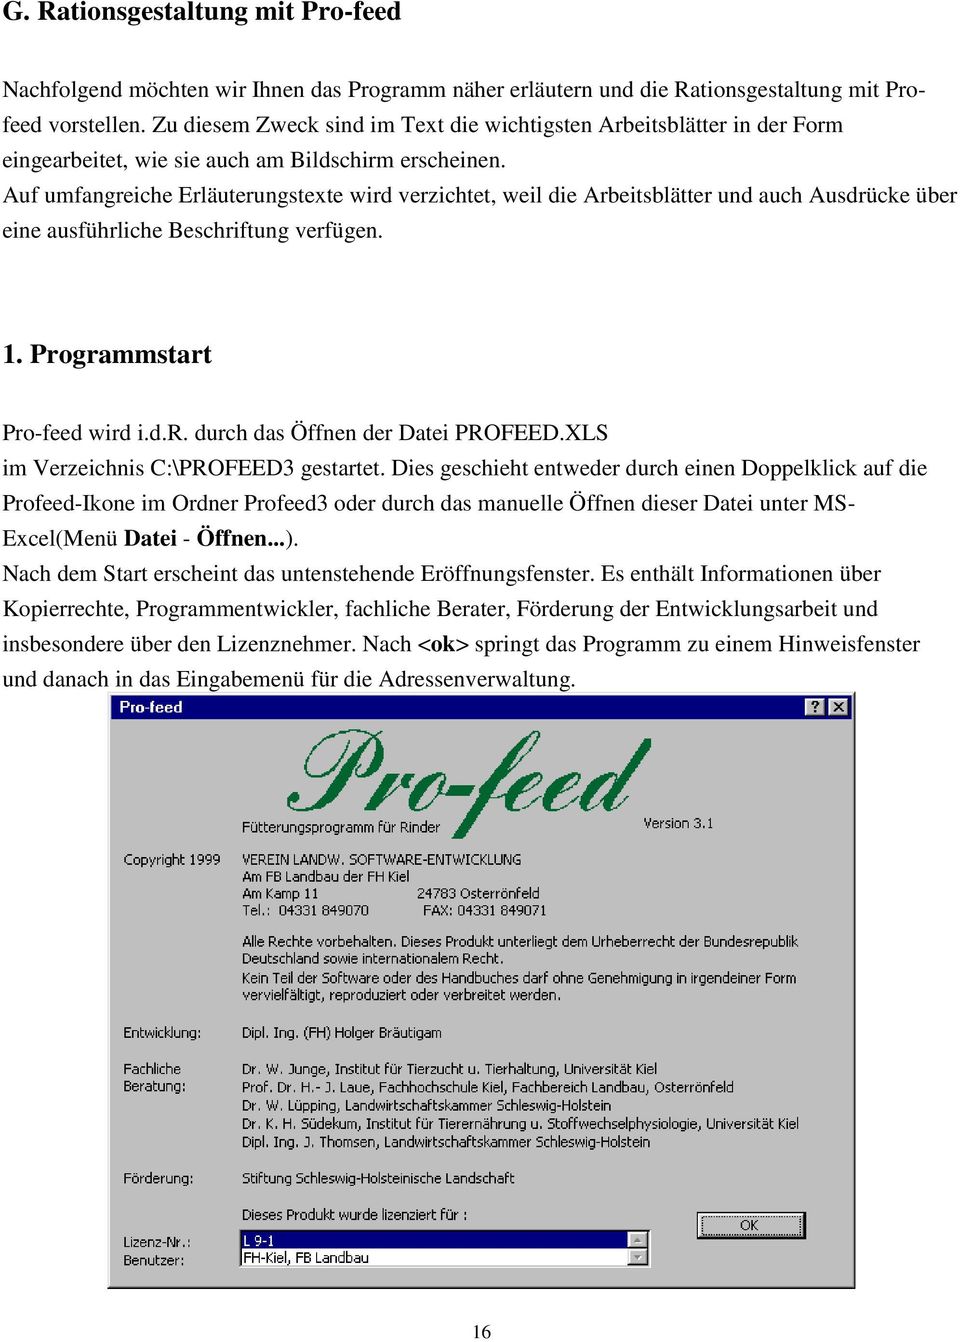 Auf umfangreiche Erläuterungstexte wird verzichtet, weil die Arbeitsblätter und auch Ausdrücke über eine ausführliche Beschriftung verfügen. 1. Programmstart Pro-feed wird i.d.r. durch das Öffnen der Datei PROFEED.